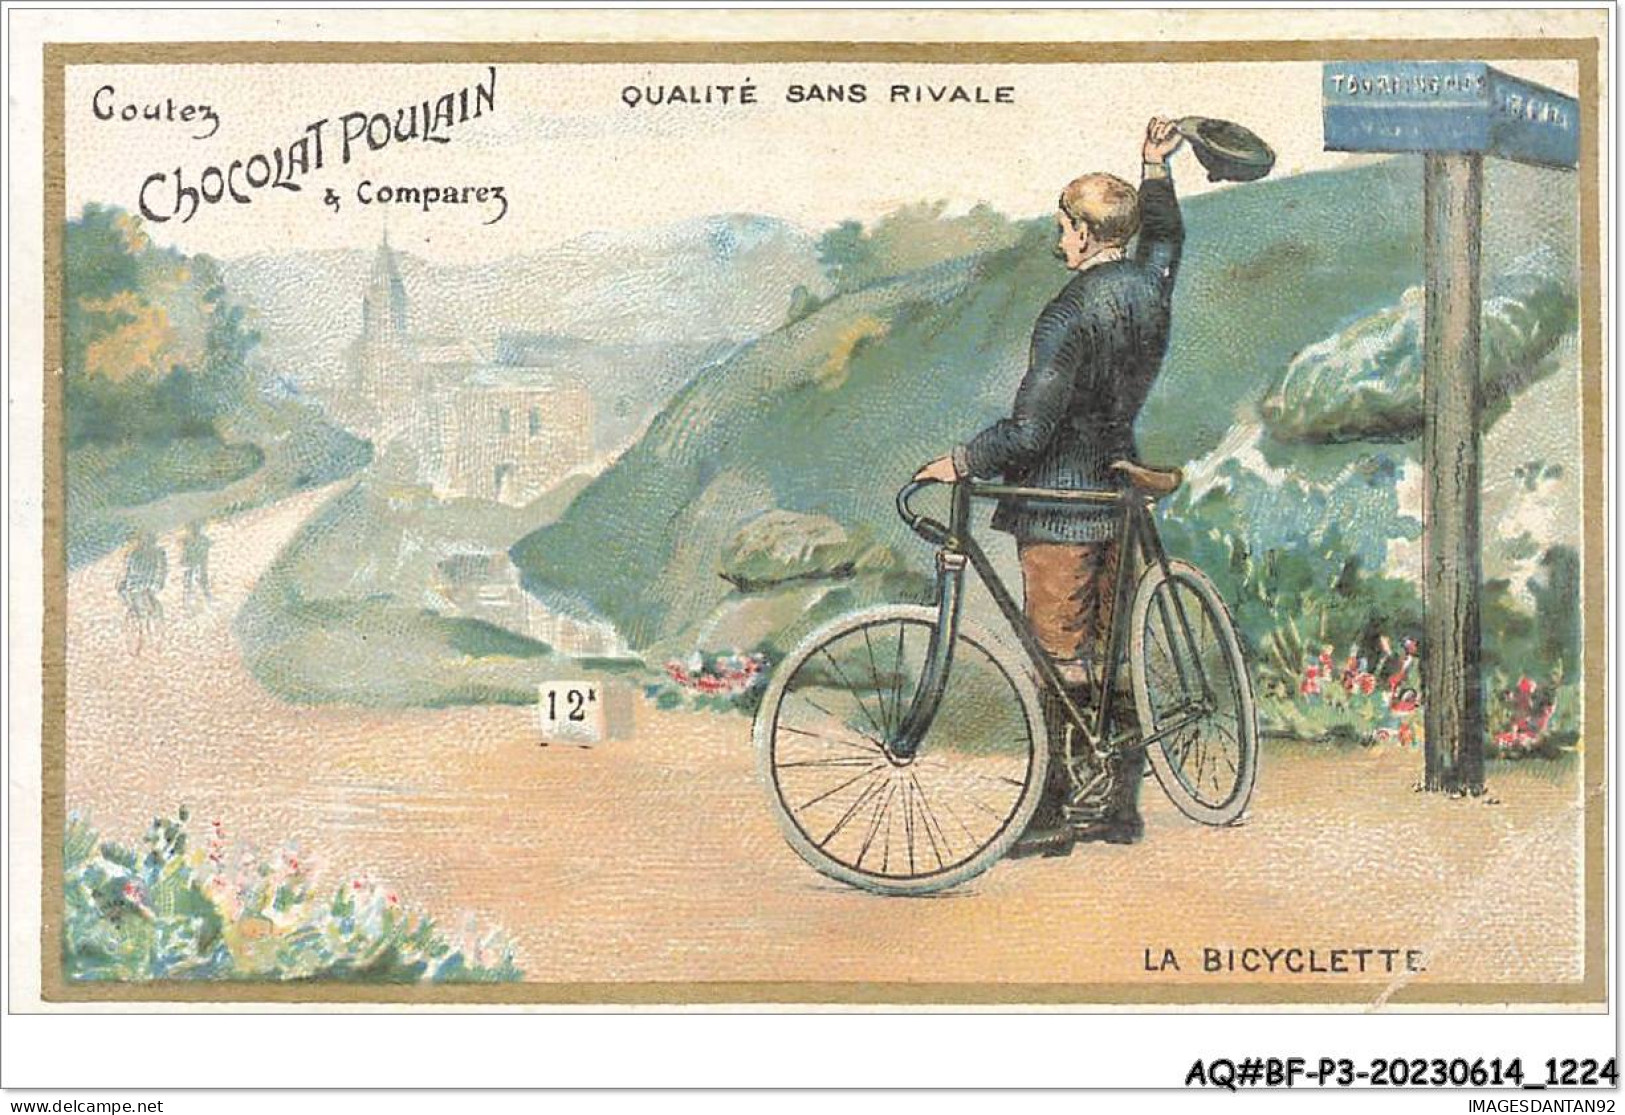 AQ#BFP3-CHROMOS-0610 - CHOCOLAT POULAIN - La Bicyclette - Poulain